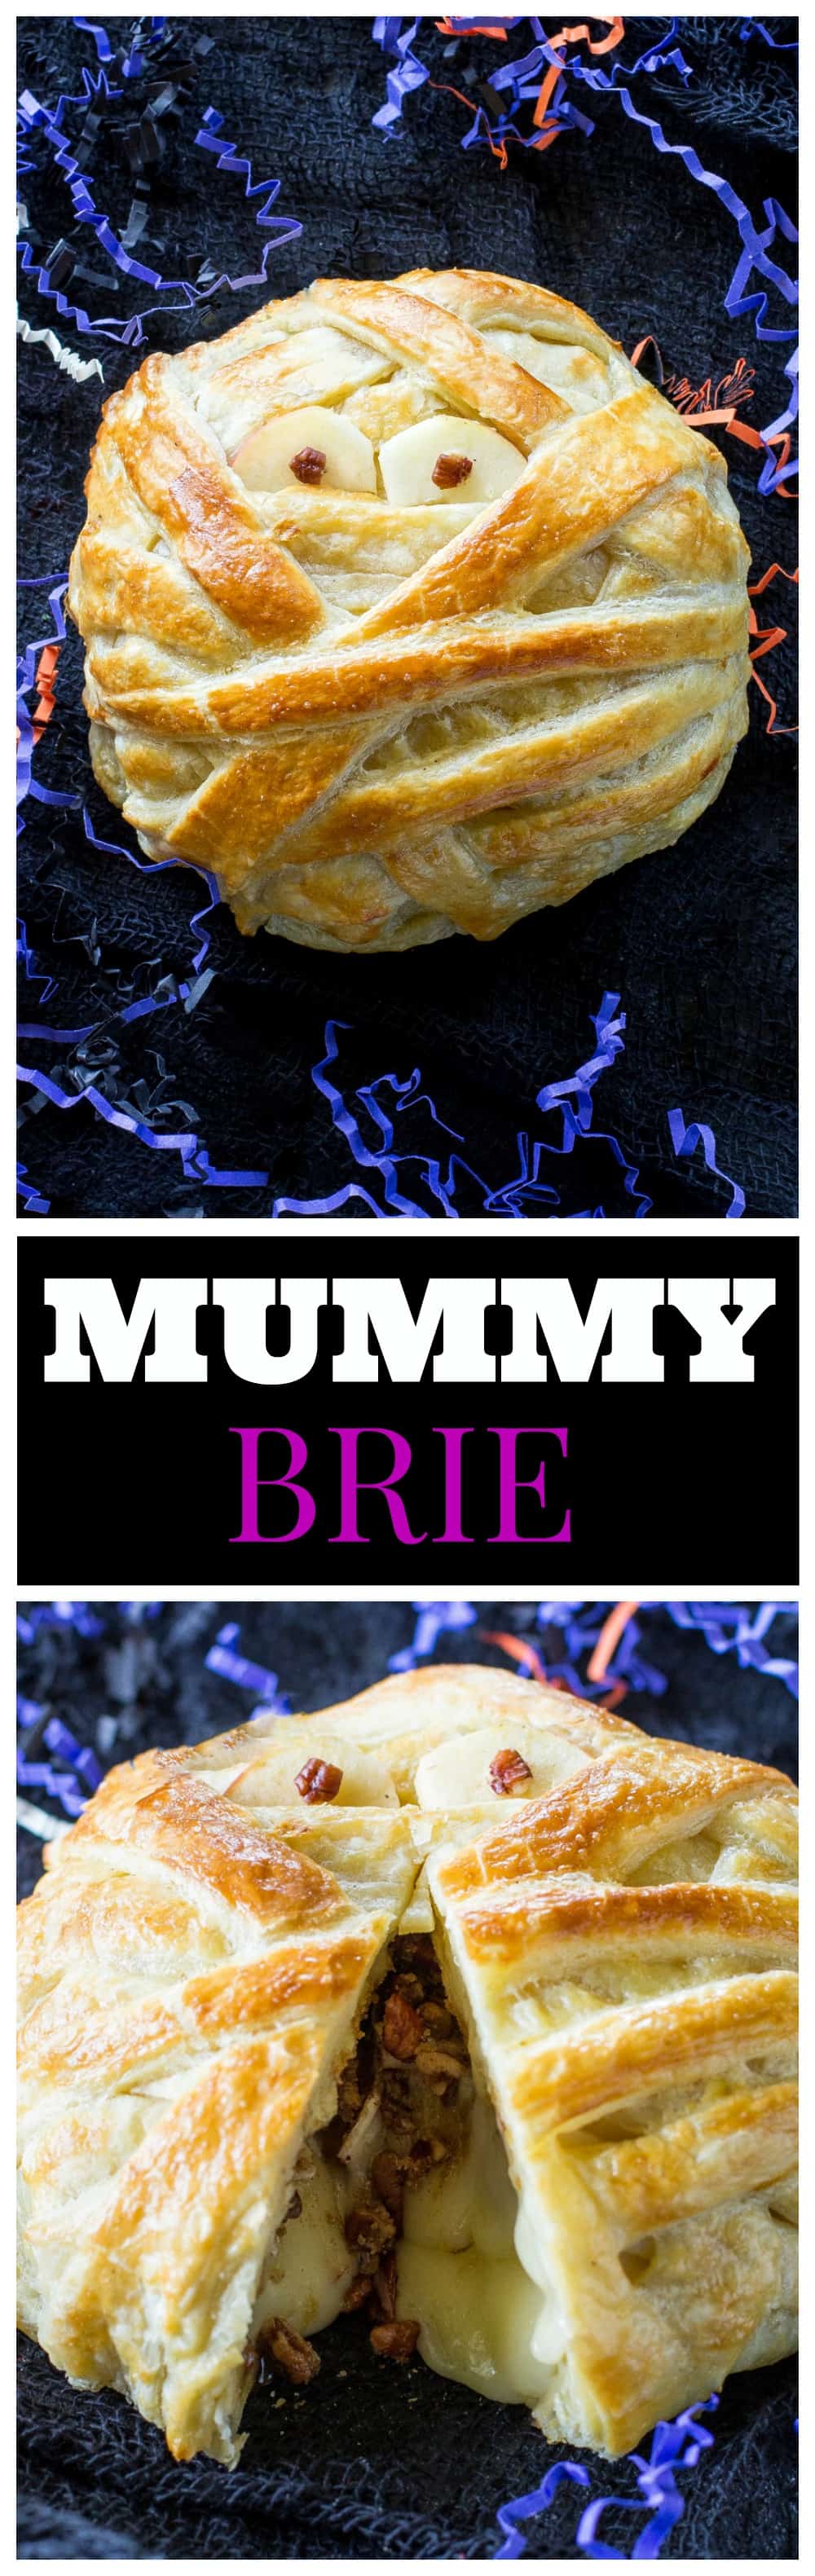 Mummy Wrapped Brie - coberto com açúcar mascavo e nozes com canela, assado dentro de massa folhada até ficar bom e pegajoso.  #halloween #aperitivo #assado #múmia #brie